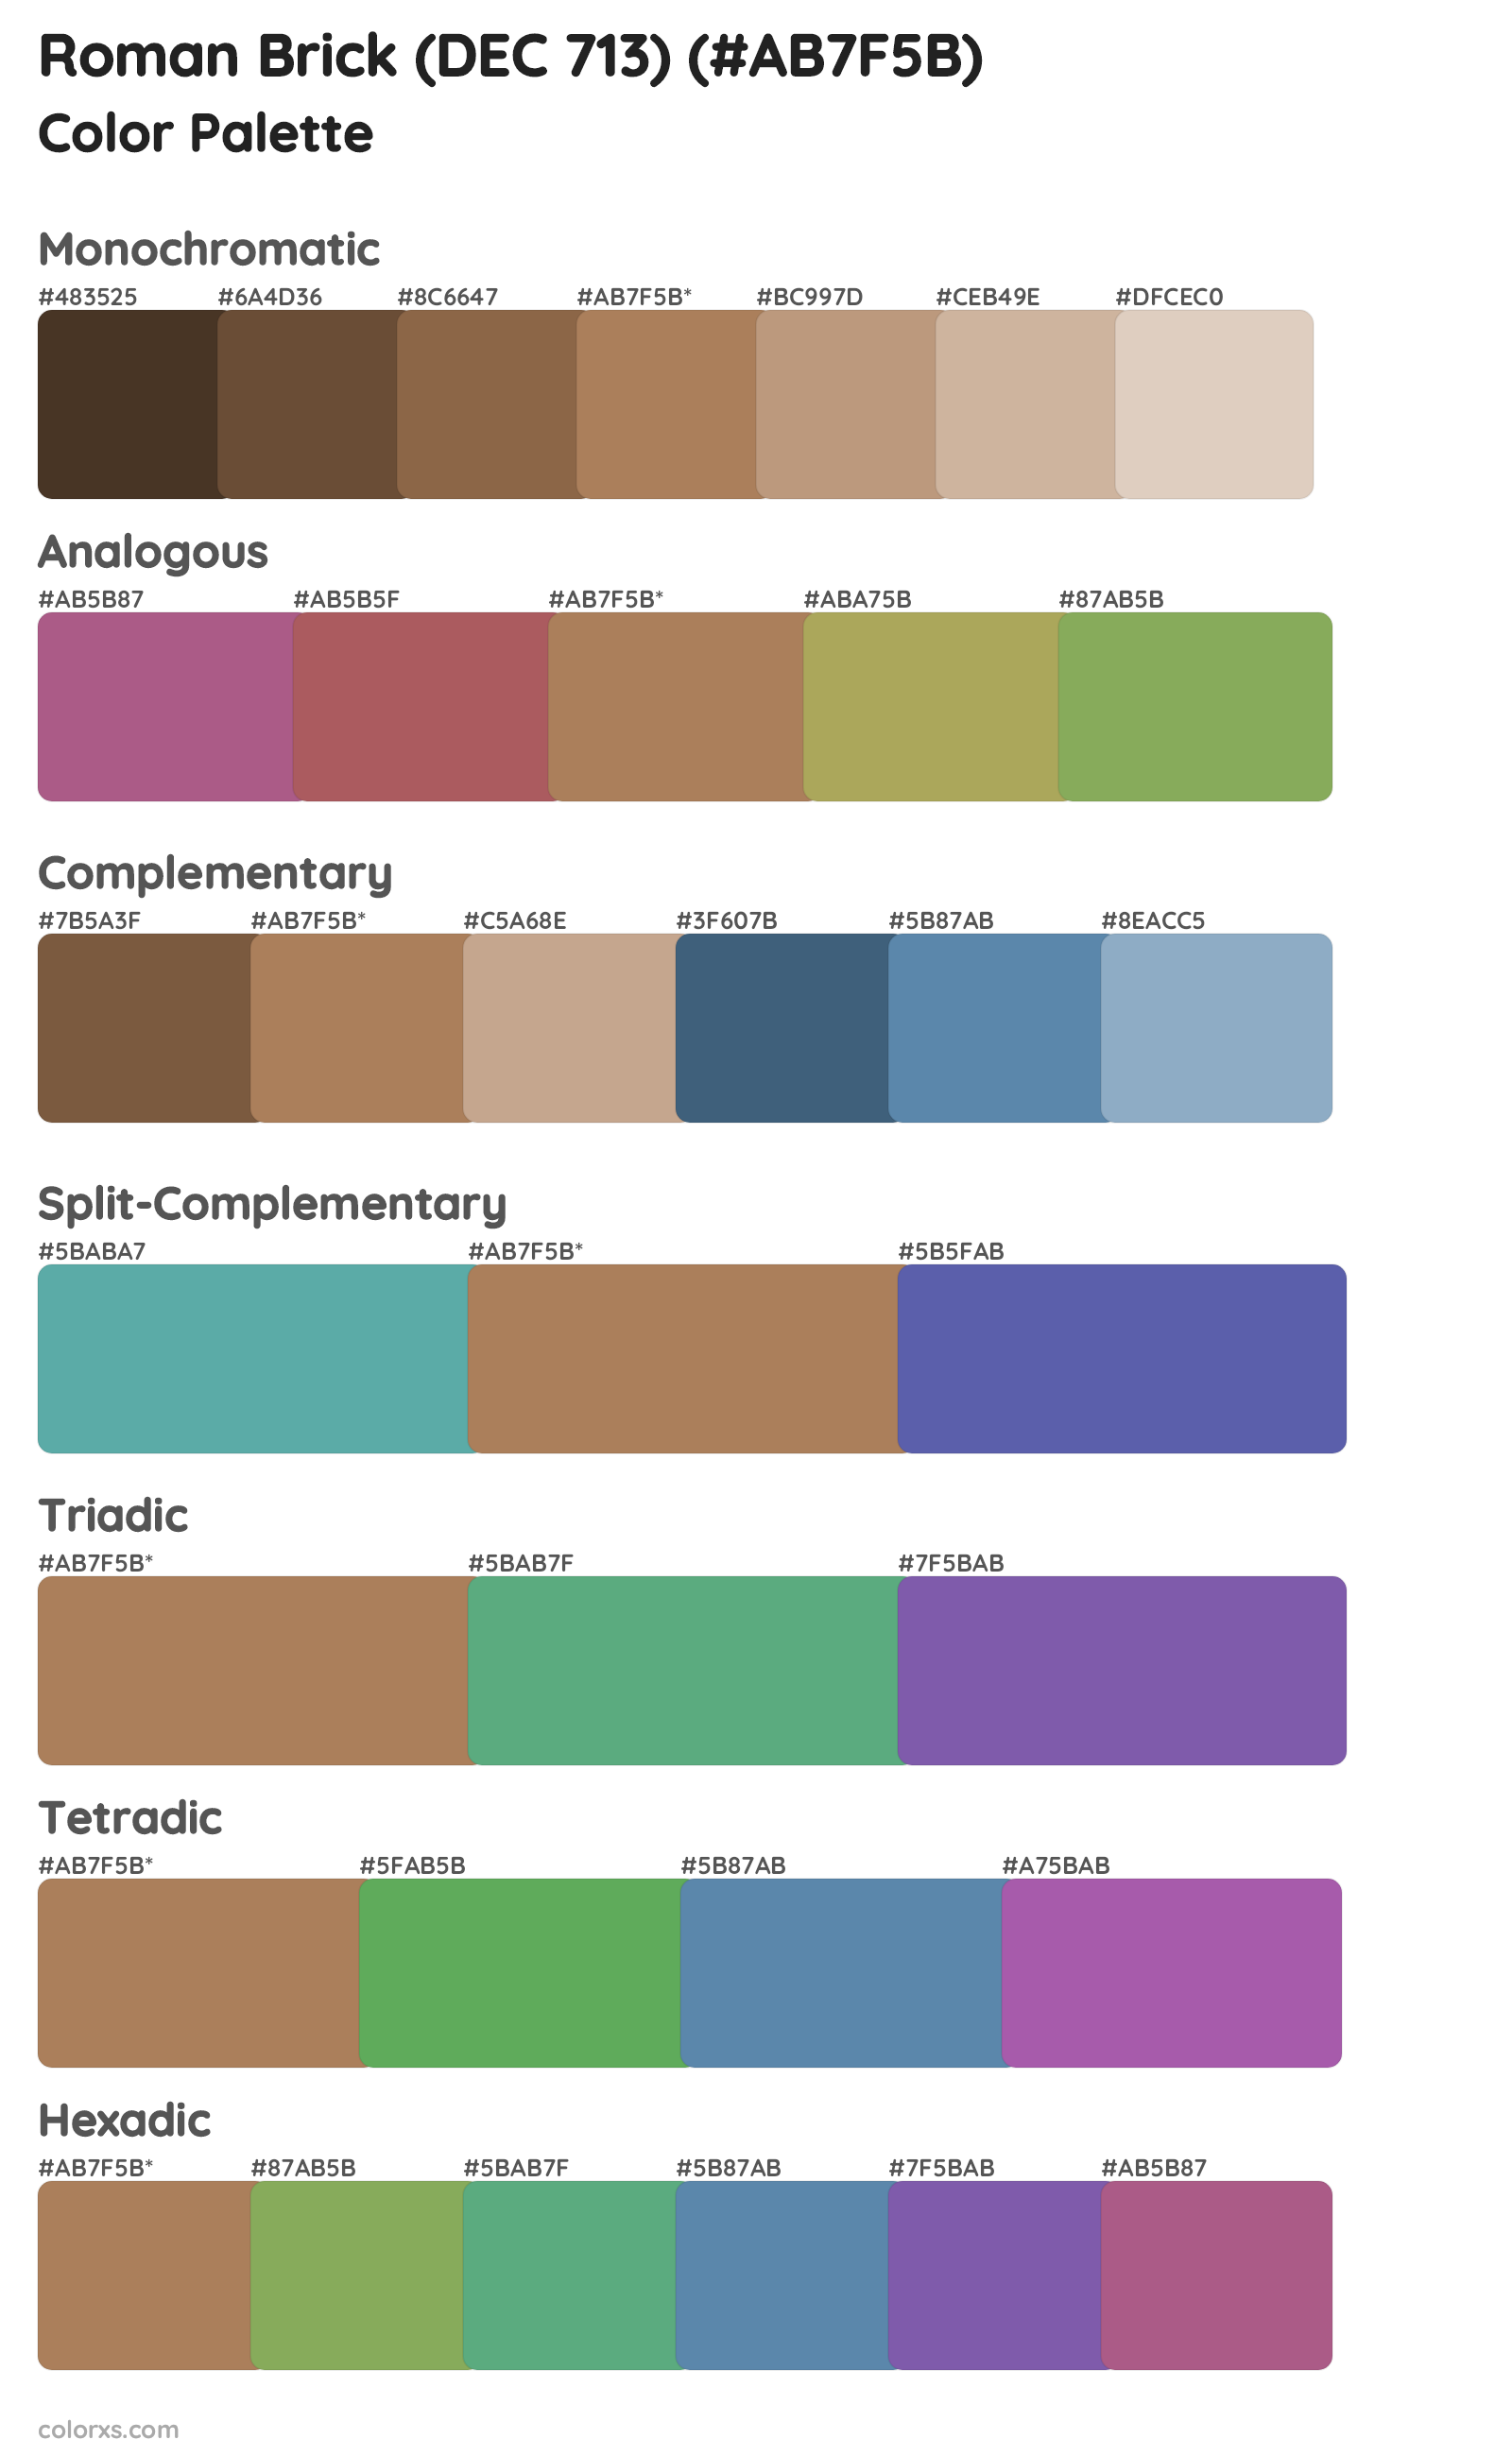 Roman Brick (DEC 713) Color Scheme Palettes